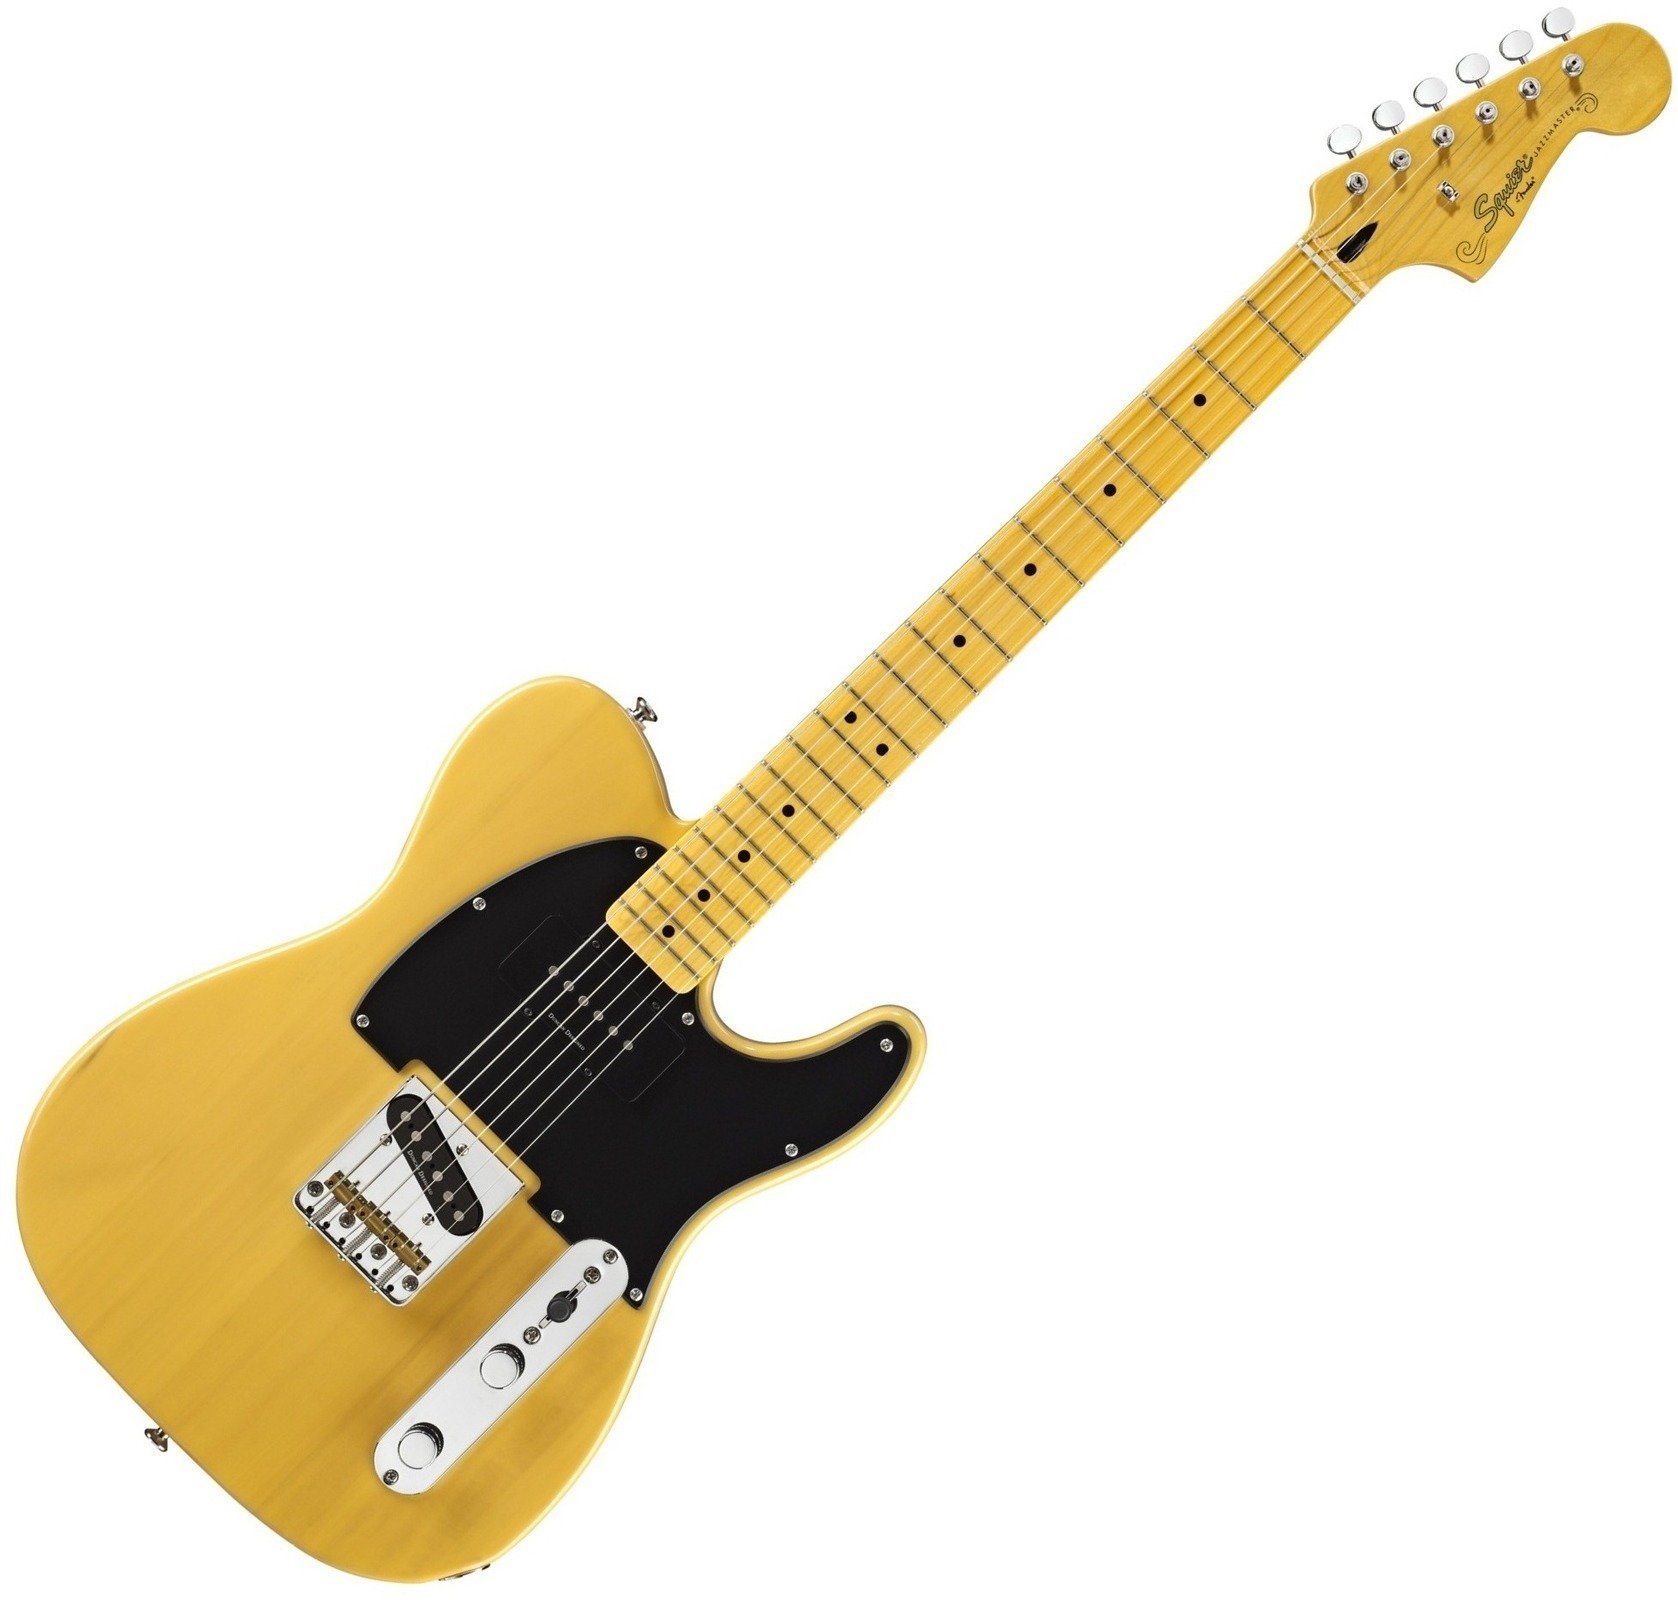 Elektrisk guitar Fender Squier Vintage Modified Telecaster Special White Blonde